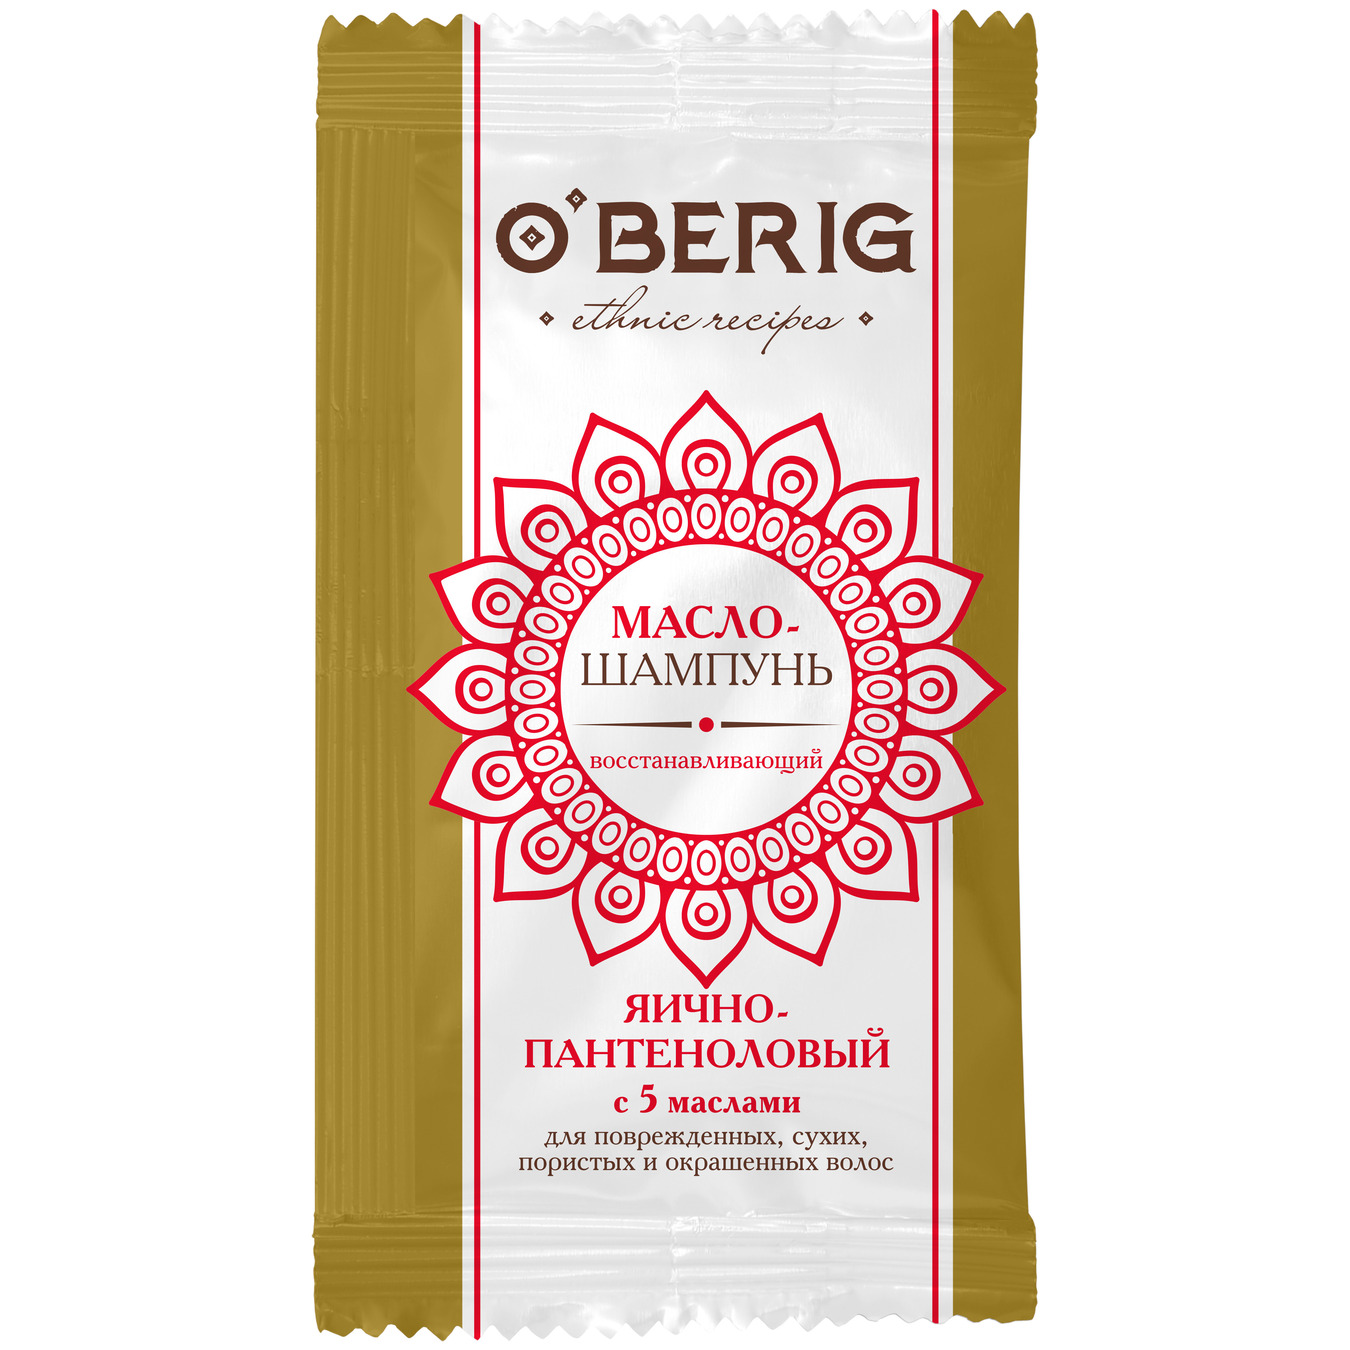 Шампунь-масло O'Berig для волос поврежденных сухих пористых и крашеных яично-пантеноловый с 5 маслами 15мл